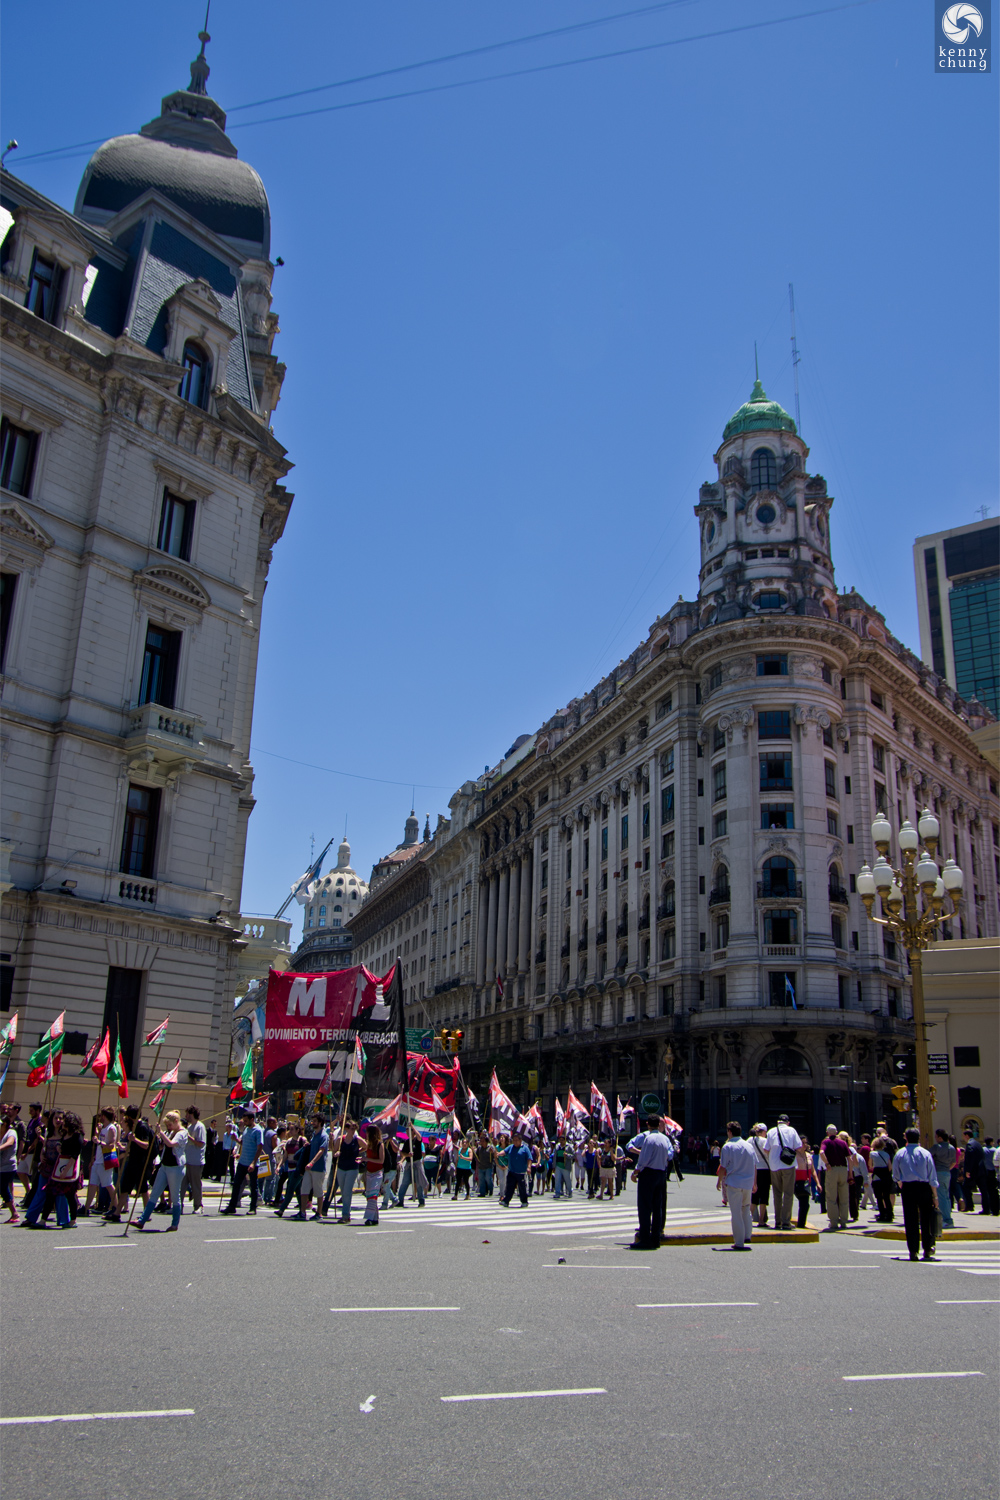 MTL Movimiento Territorial de Libraction protest in Plaza de Mayo